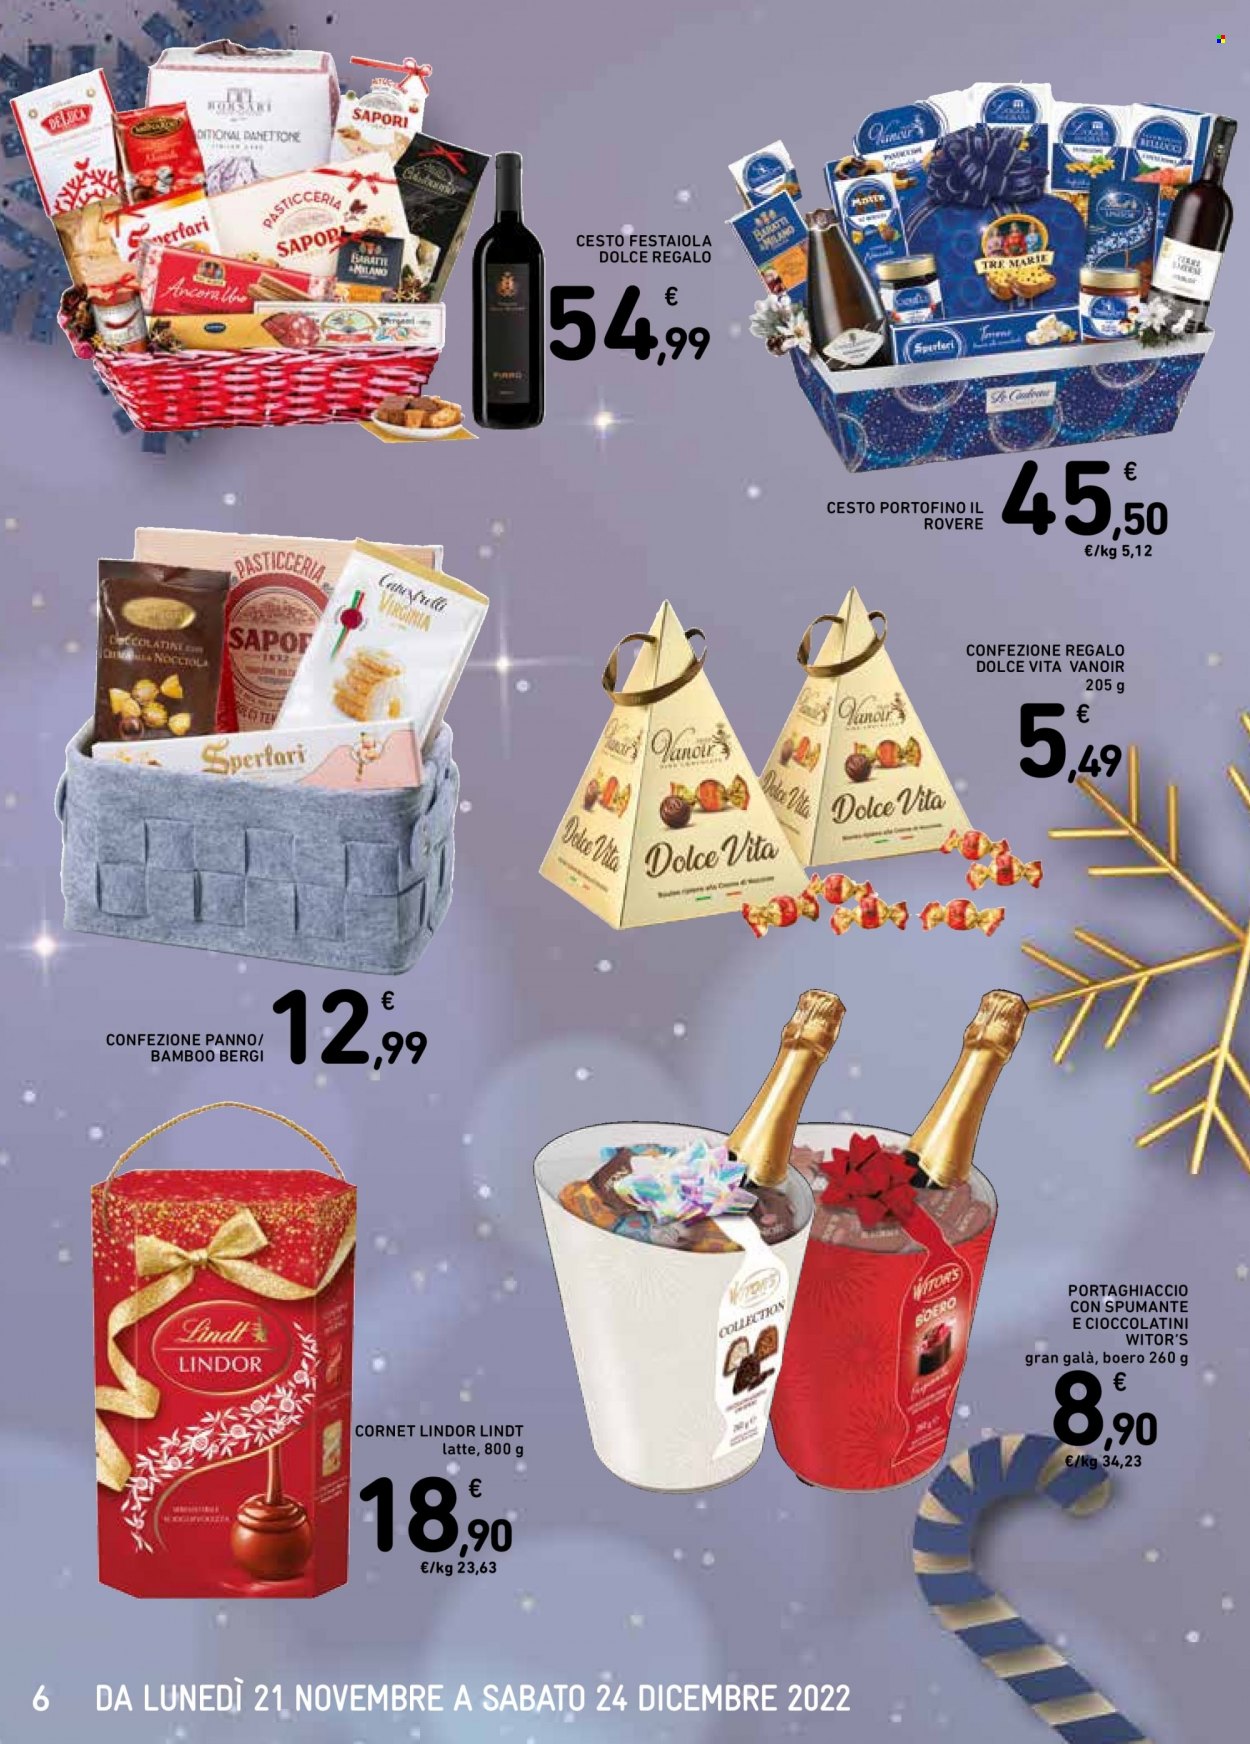 thumbnail - Volantino Conad - 21/11/2022 - 24/12/2022 - Prodotti in offerta - Motta, latte, cioccolatini, Spumante, confezione regalo, panno. Pagina 6.